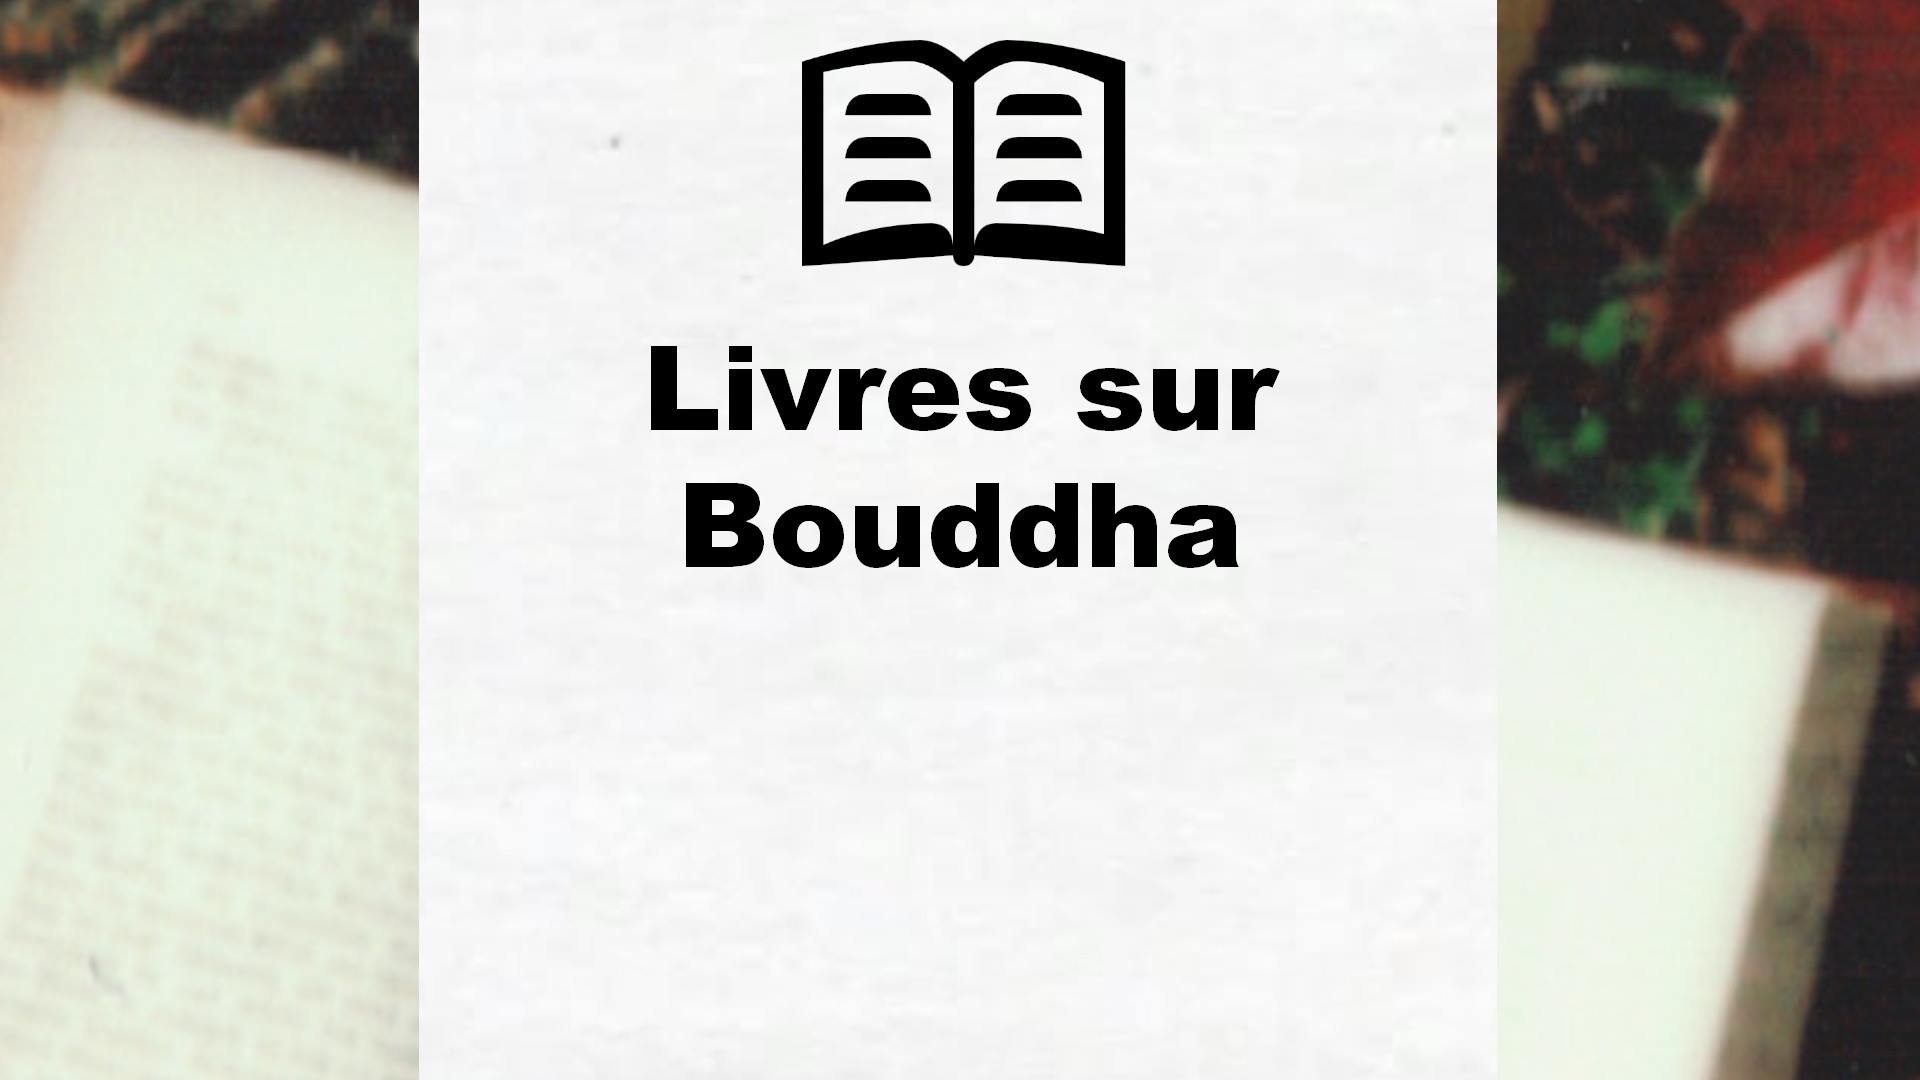 Livres sur Bouddha